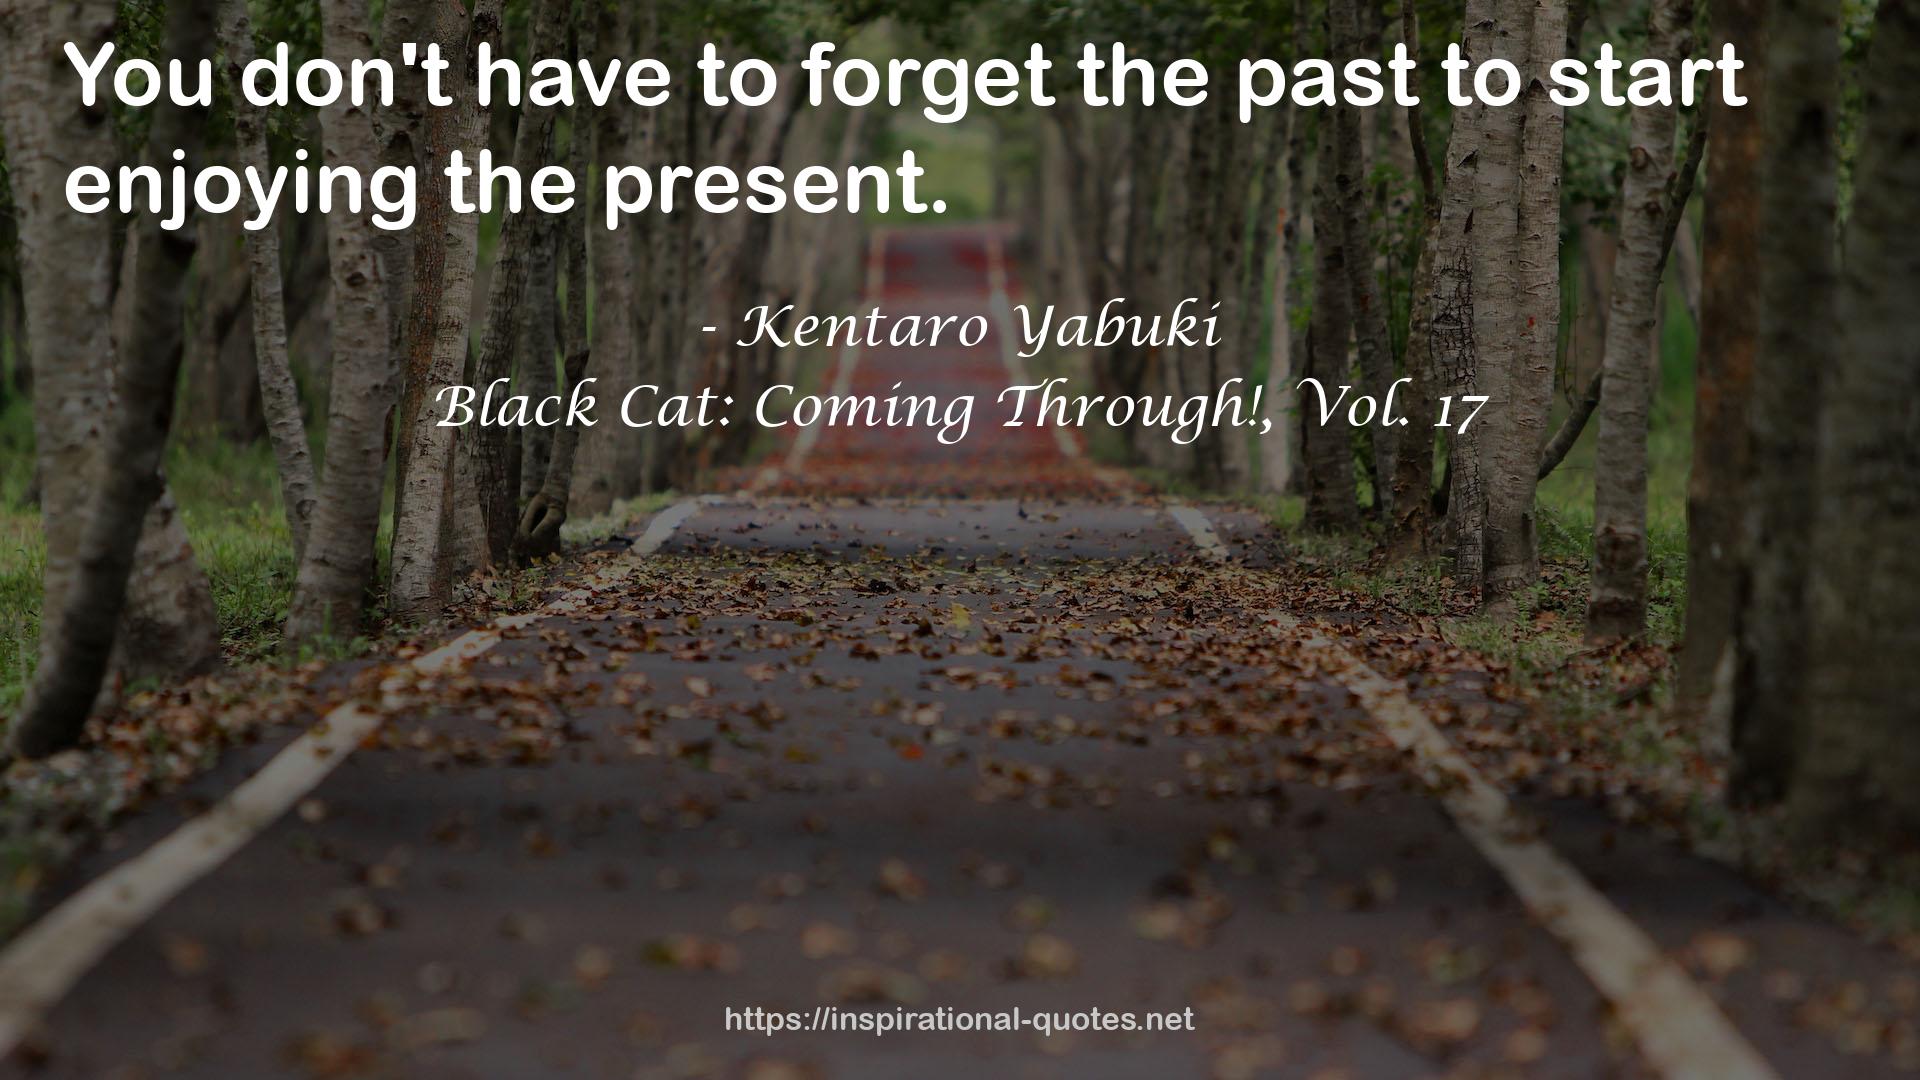 Black Cat: Coming Through!, Vol. 17 QUOTES